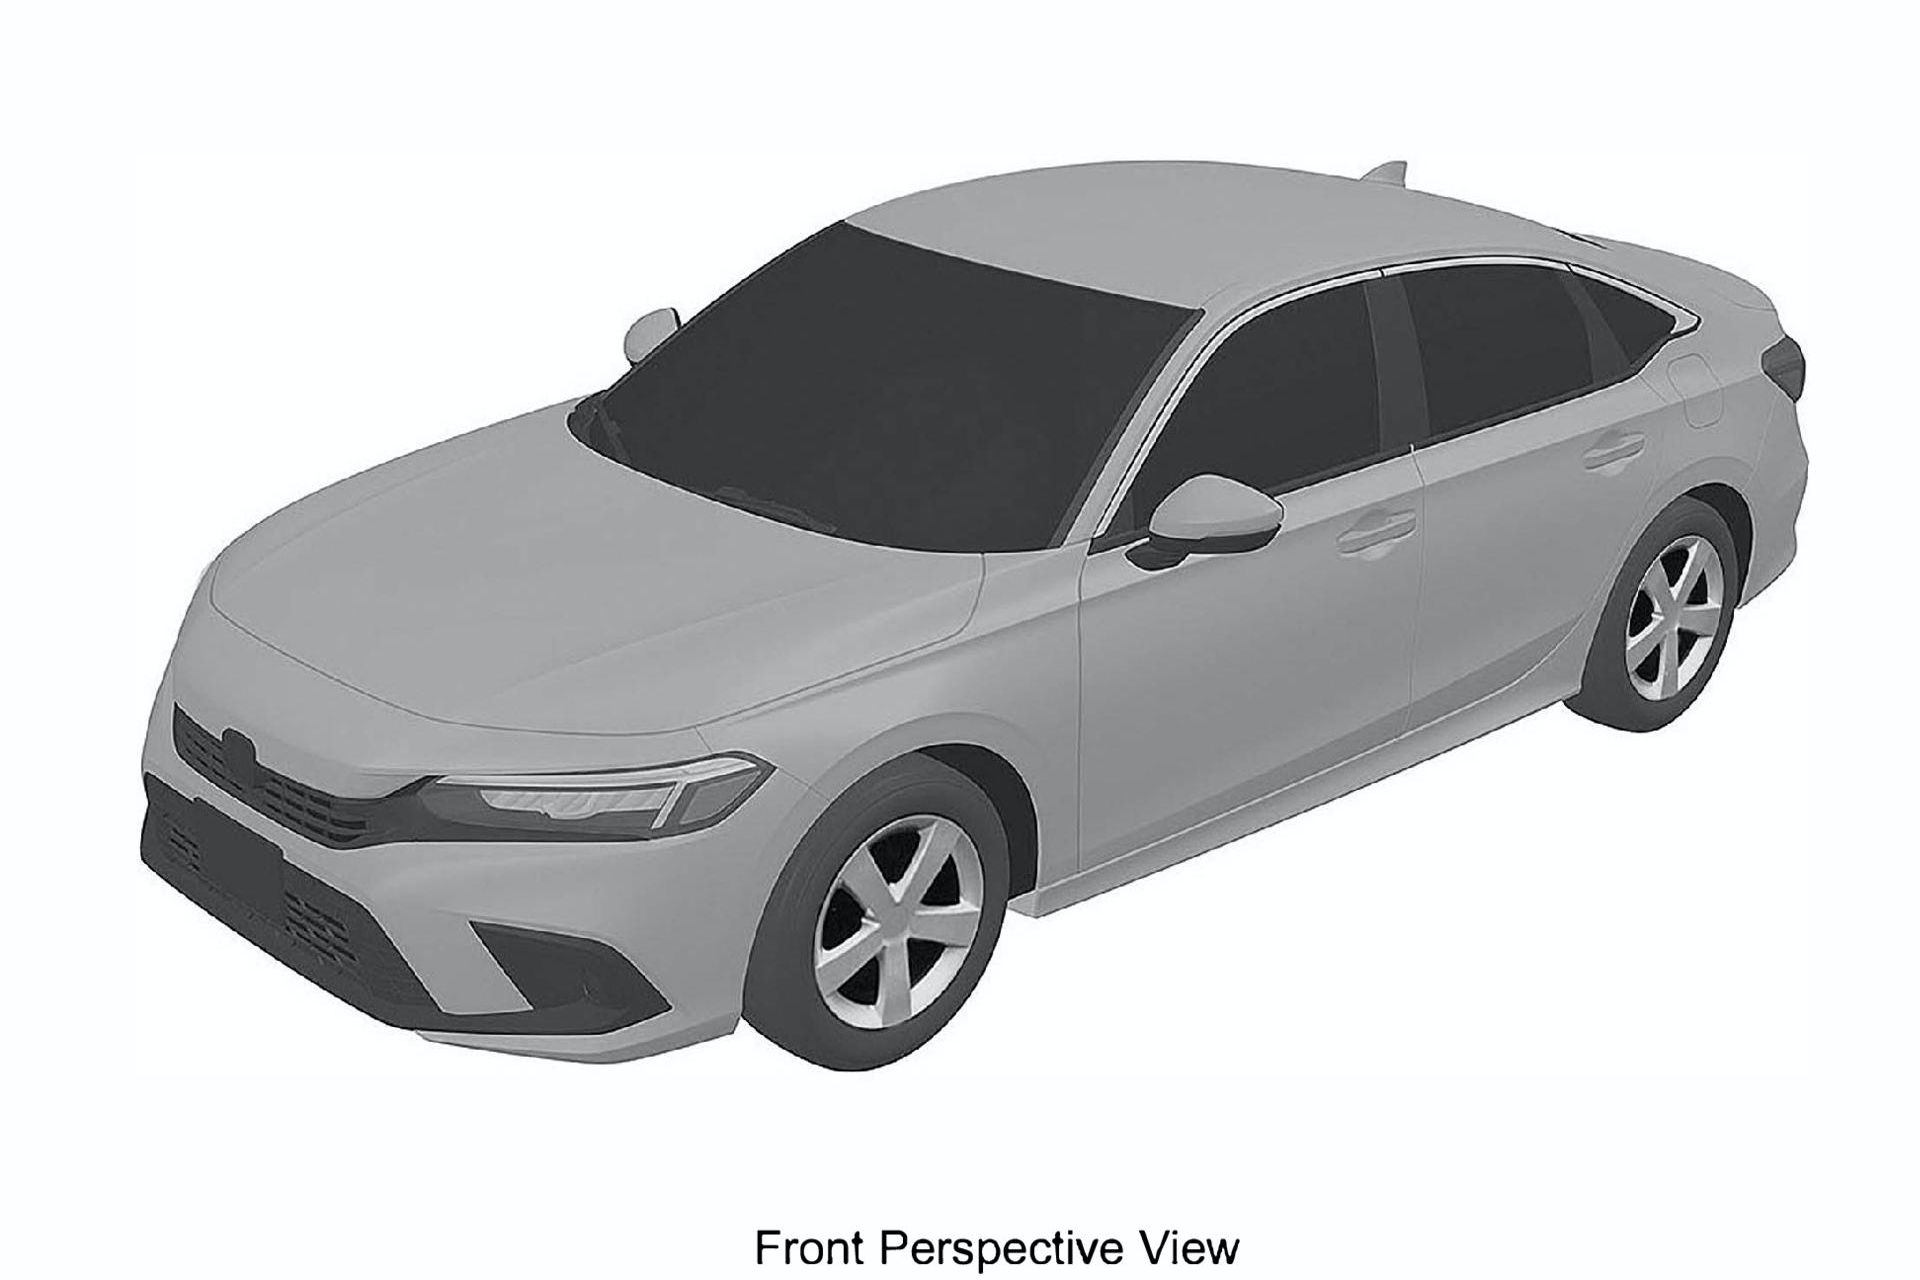 2022-honda-civic-sedan-patent-images-1.jpg